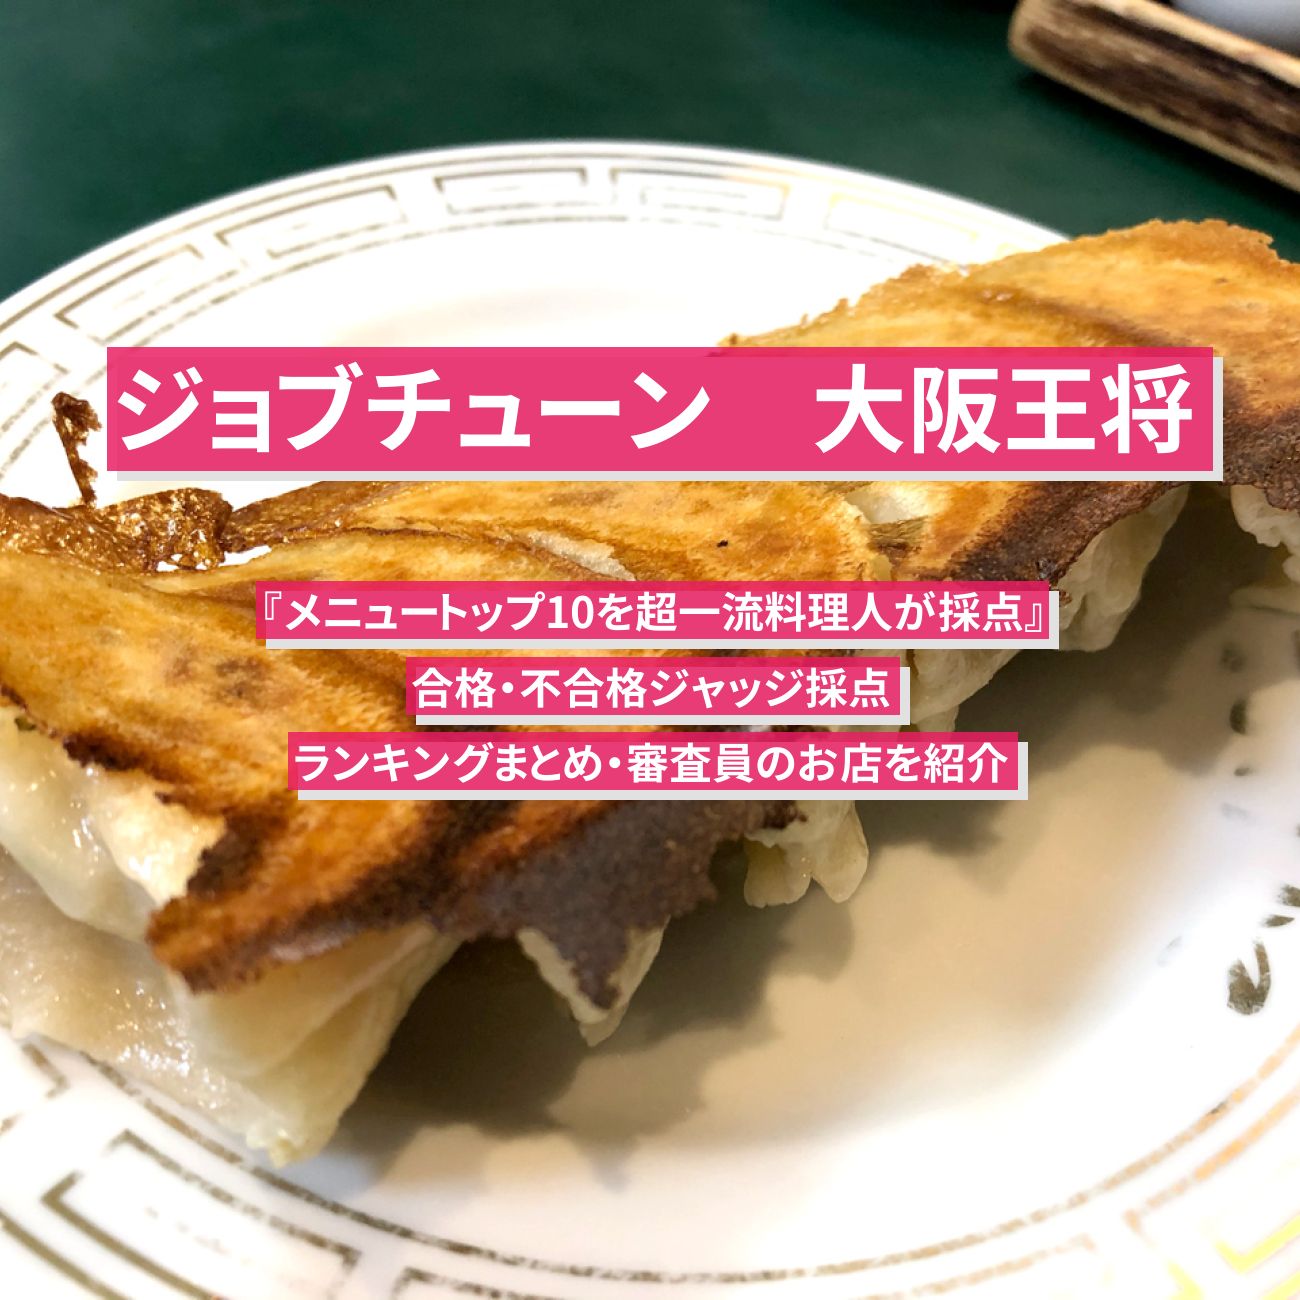 【ジョブチューン 】大阪王将ランキングTOP10の合格・不合格ジャッジ採点まとめ・審査員のお店を紹介『メニュートップ10を超一流料理人が採点』